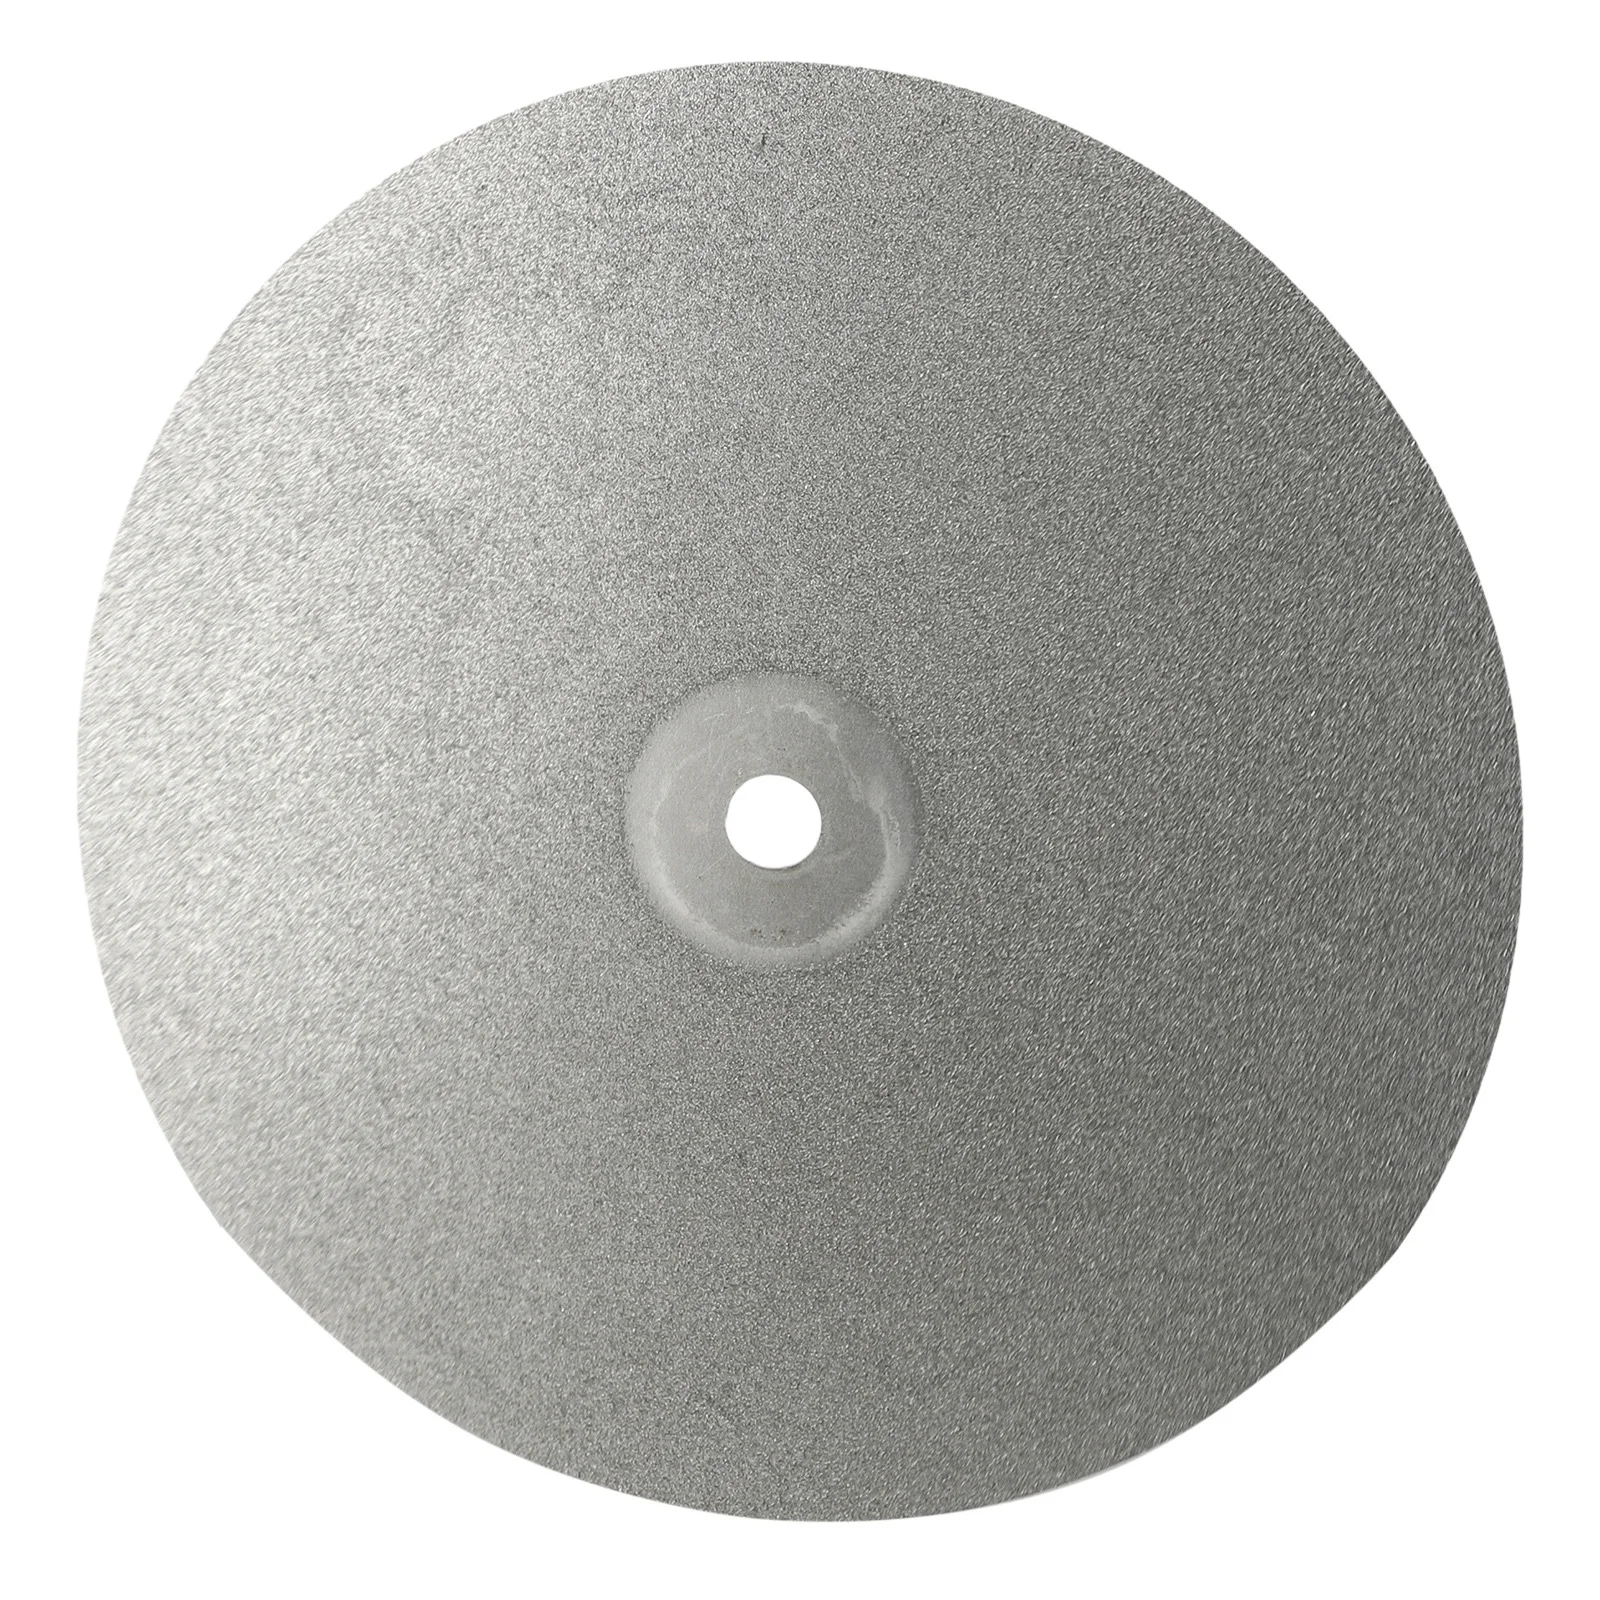 

Диск шлифовальный 8-дюймовый с алмазным покрытием, плоский круговой диск для полировки драгоценных камней, ювелирных изделий, стекла, шлифовки, резьбы, 1 шт.